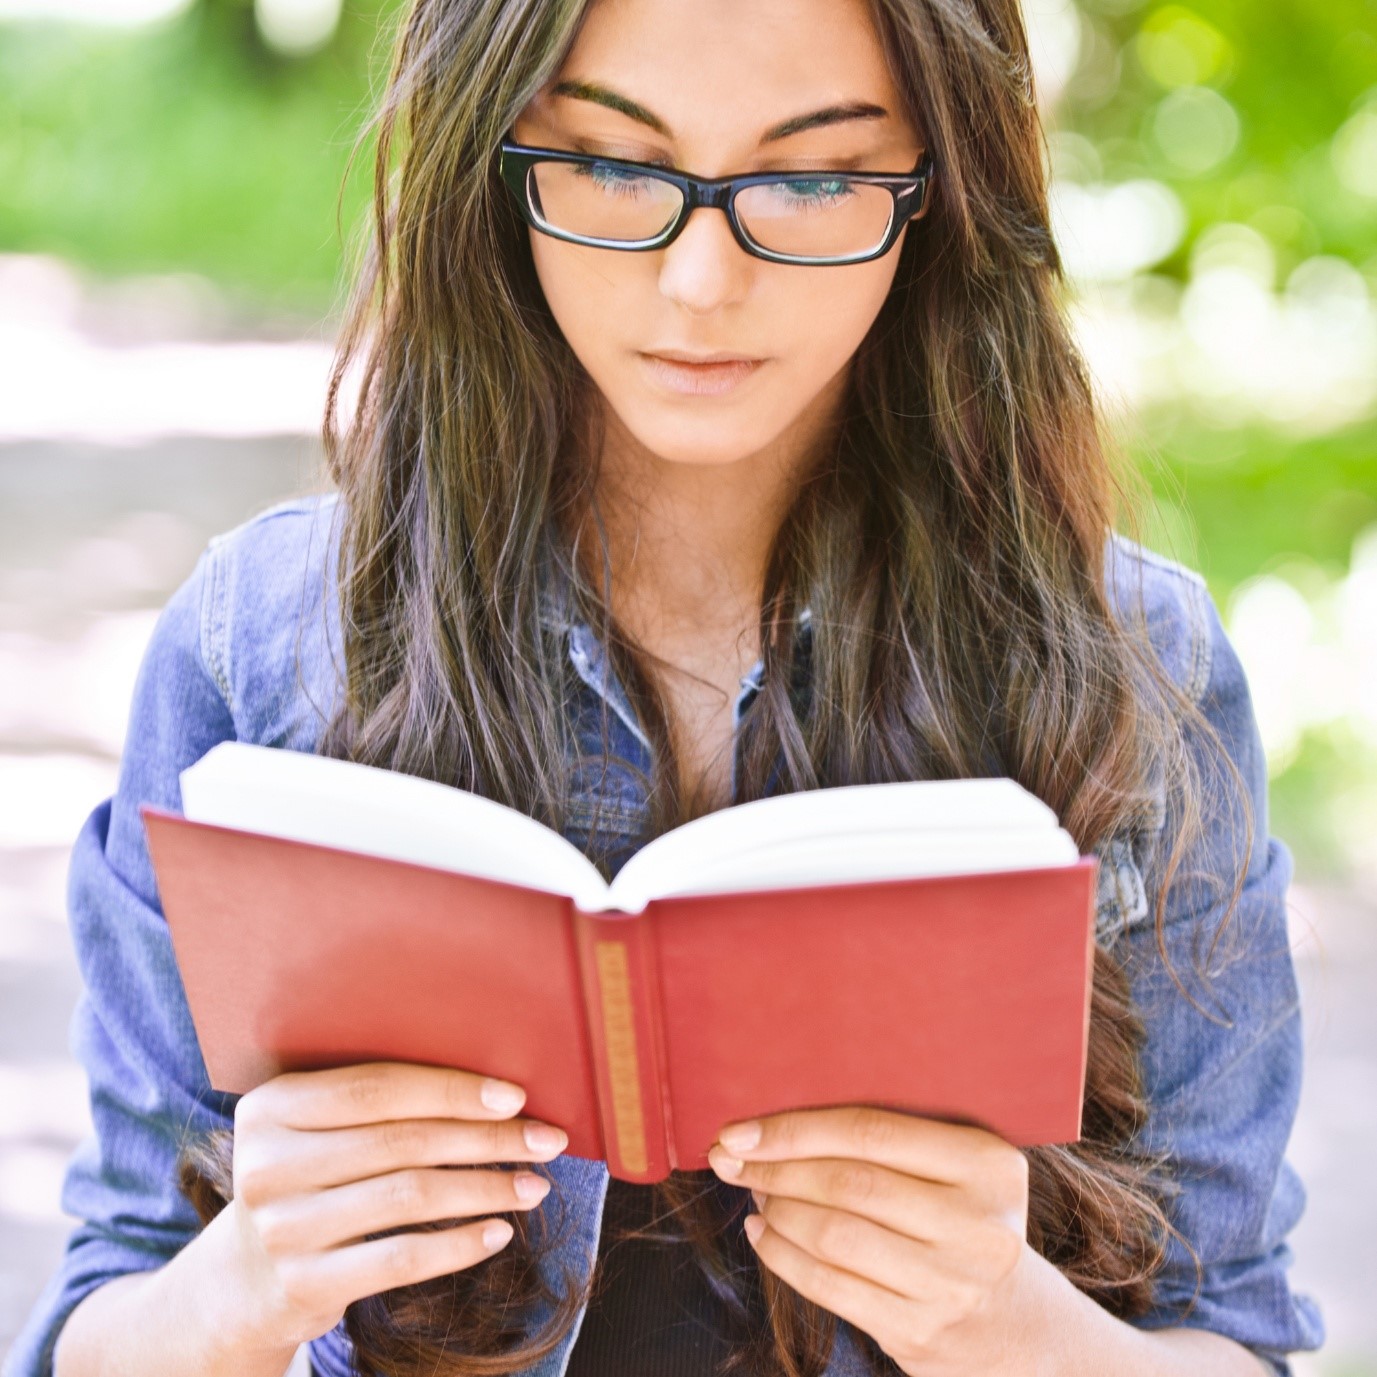 Читать приличный. Умная девушка. Девушка с книгой. Красивая умная девушка. Умная девушка в очках.